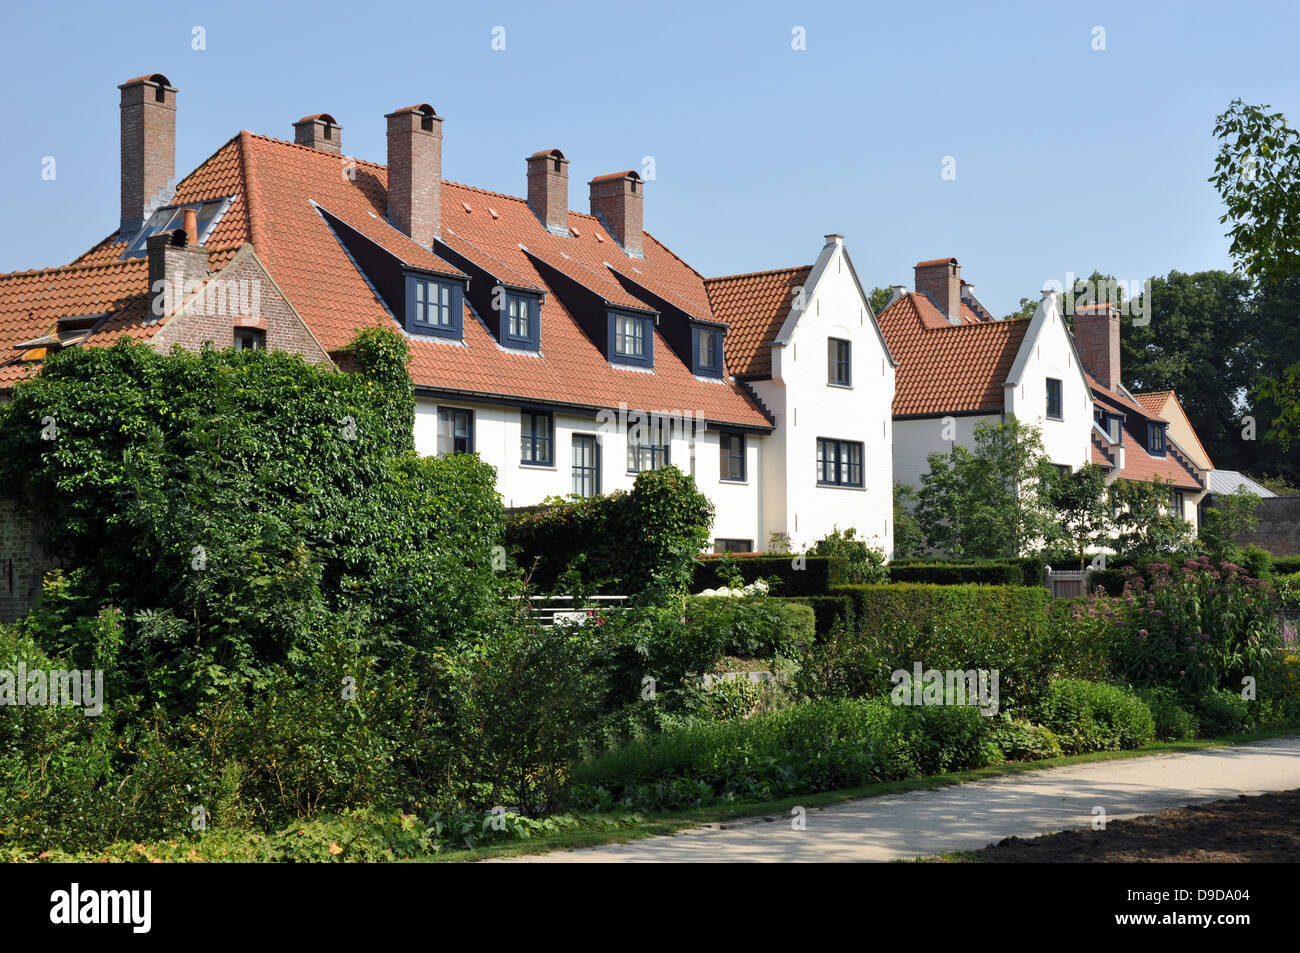 Maisons moderne typique juste à l'extérieur du centre plus traditionnelles de Bruges, Belgique, Europe. Banque D'Images